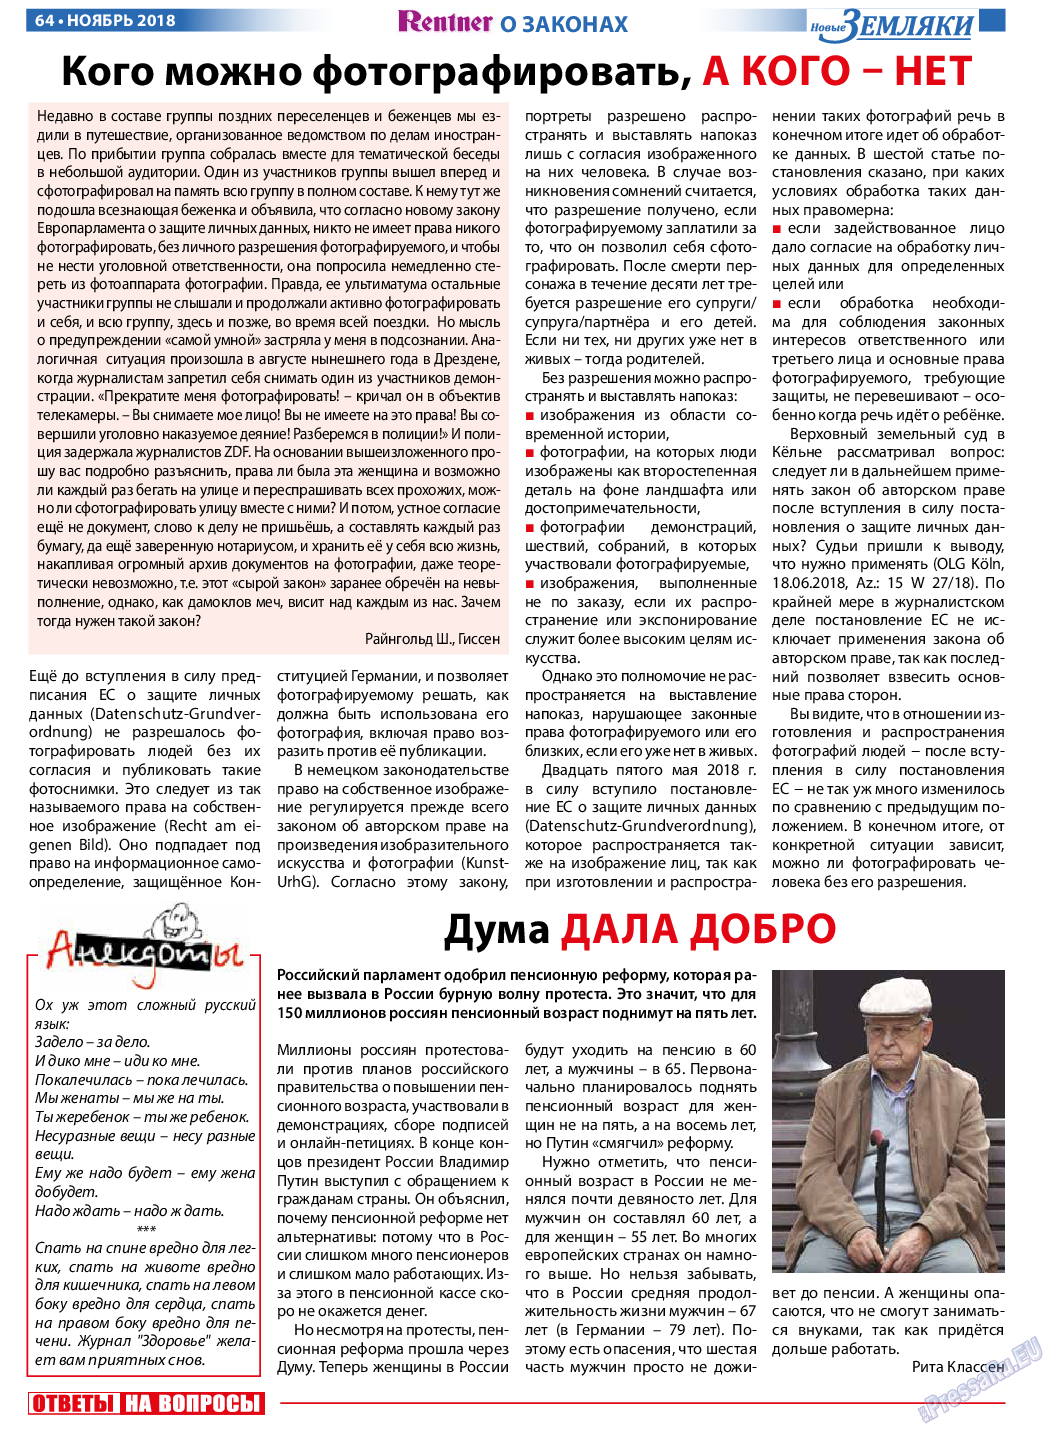 Новые Земляки, газета. 2018 №11 стр.64